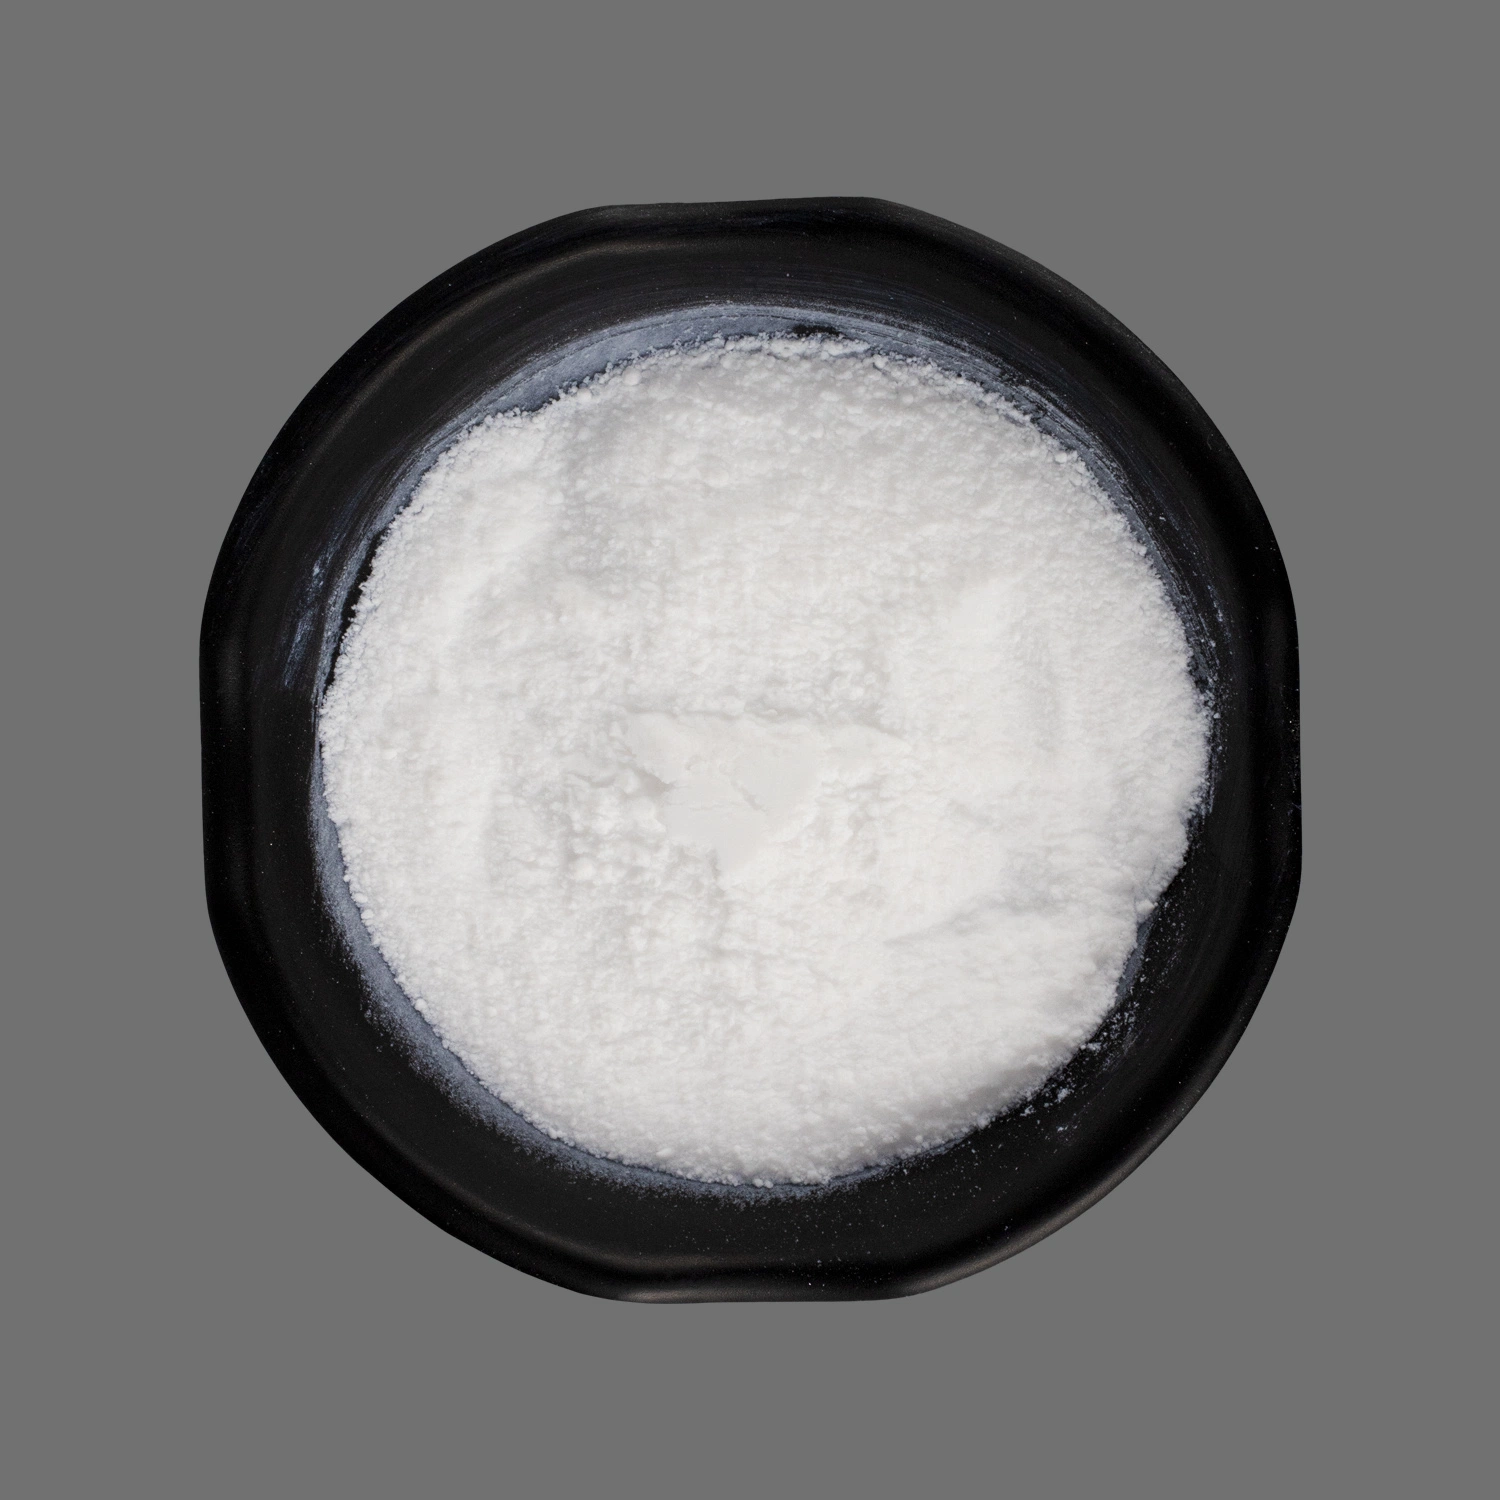 Dióxido de silicio/sílice precipitada/SiO2 polvo blanco no. CAS 14464-46-1